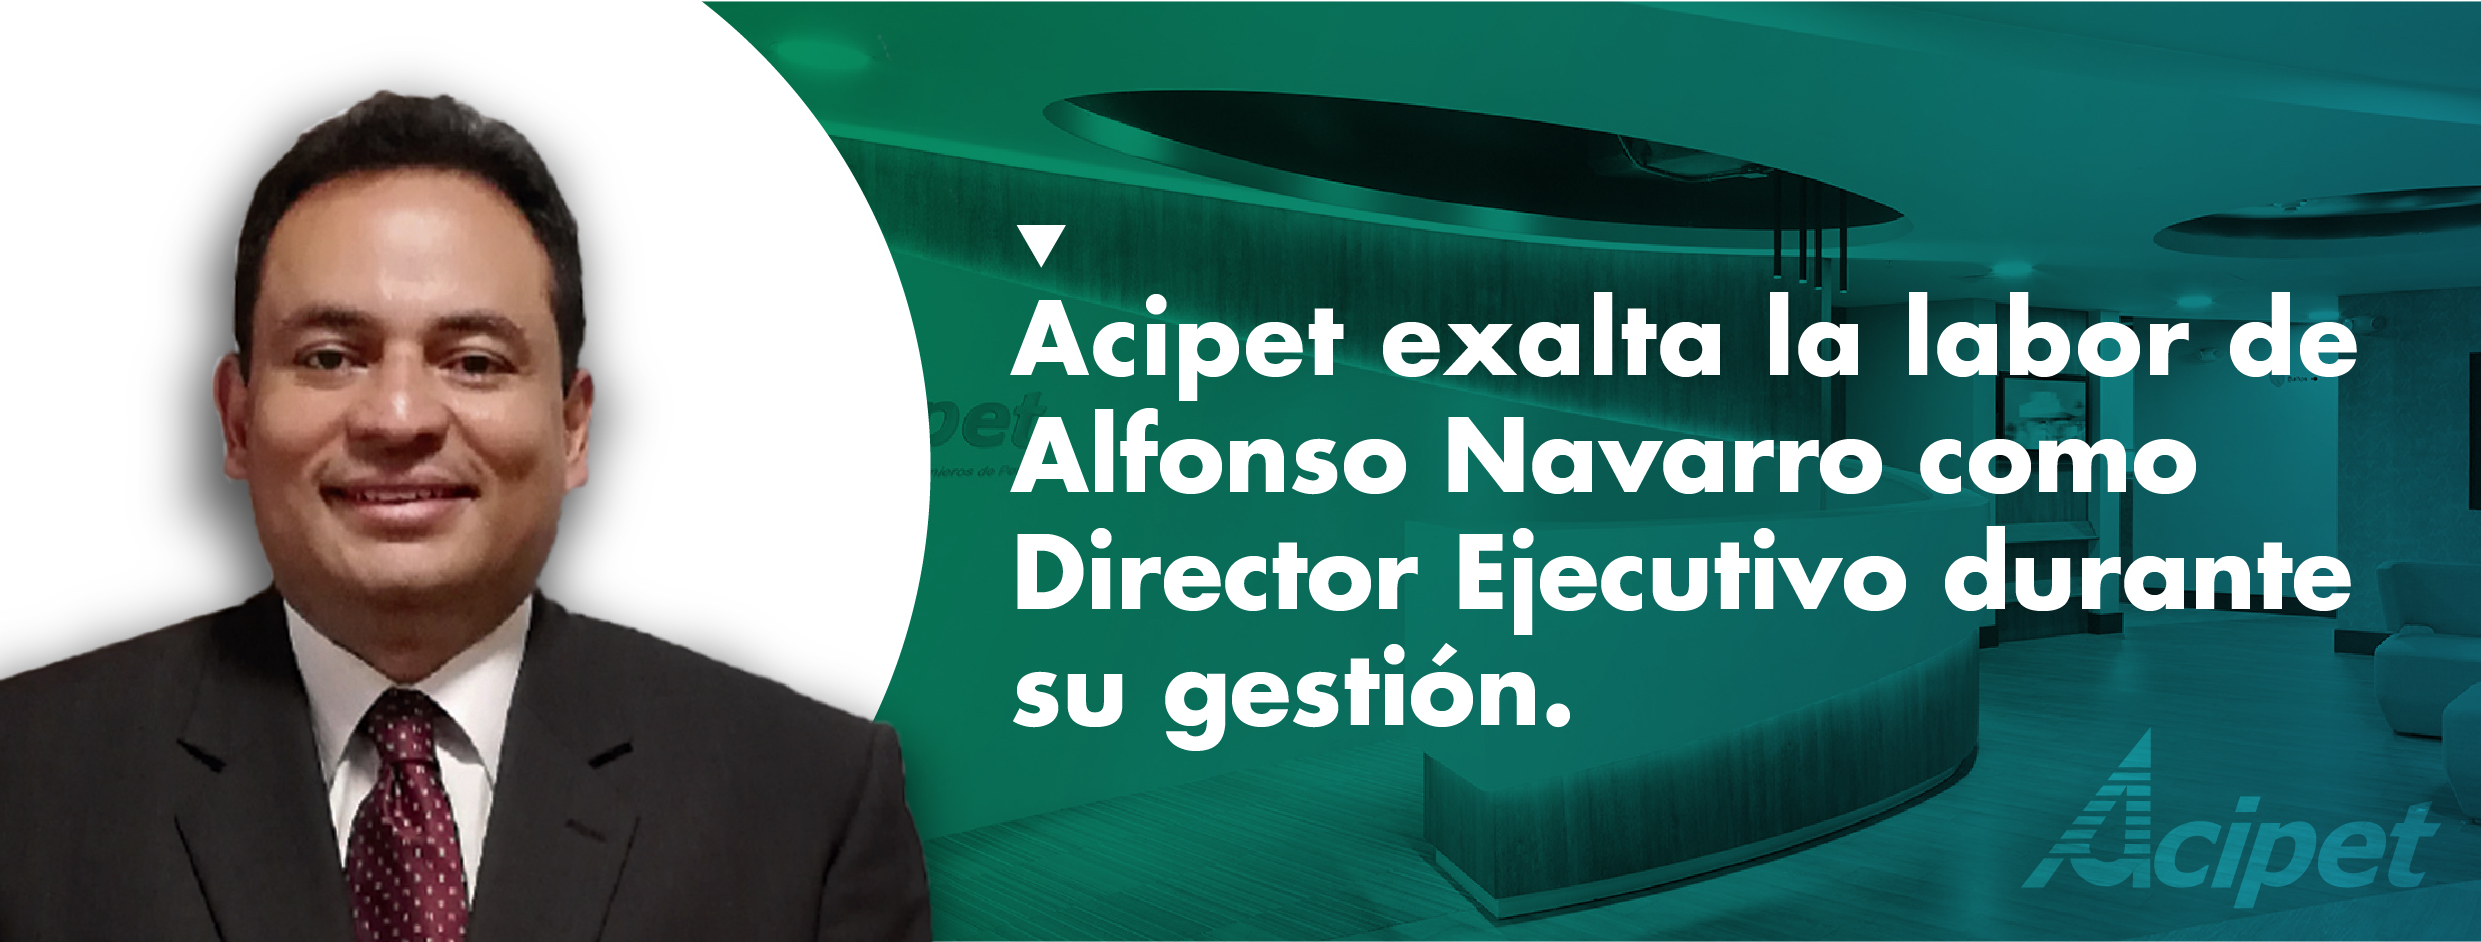 Acipet exalta la labor de Alfonso Navarro como Director Ejecutivo durante su gestión